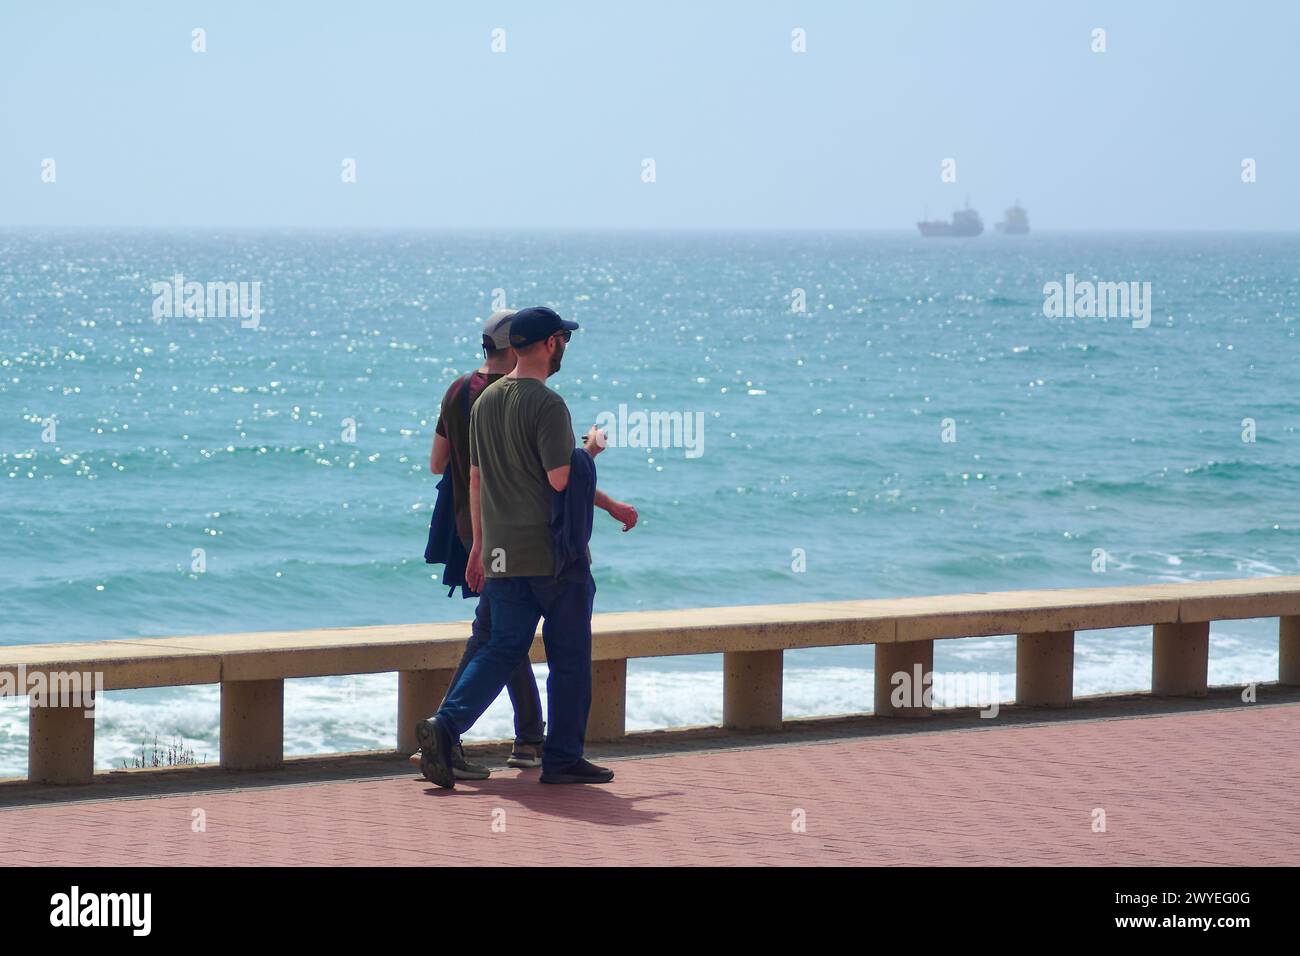 Tarragone, Espagne - 6 avril 2024 : deux personnes profitant d'une promenade ensoleillée, avec la mer bleue et un bateau au loin, reflétant la tranquillité de t Banque D'Images